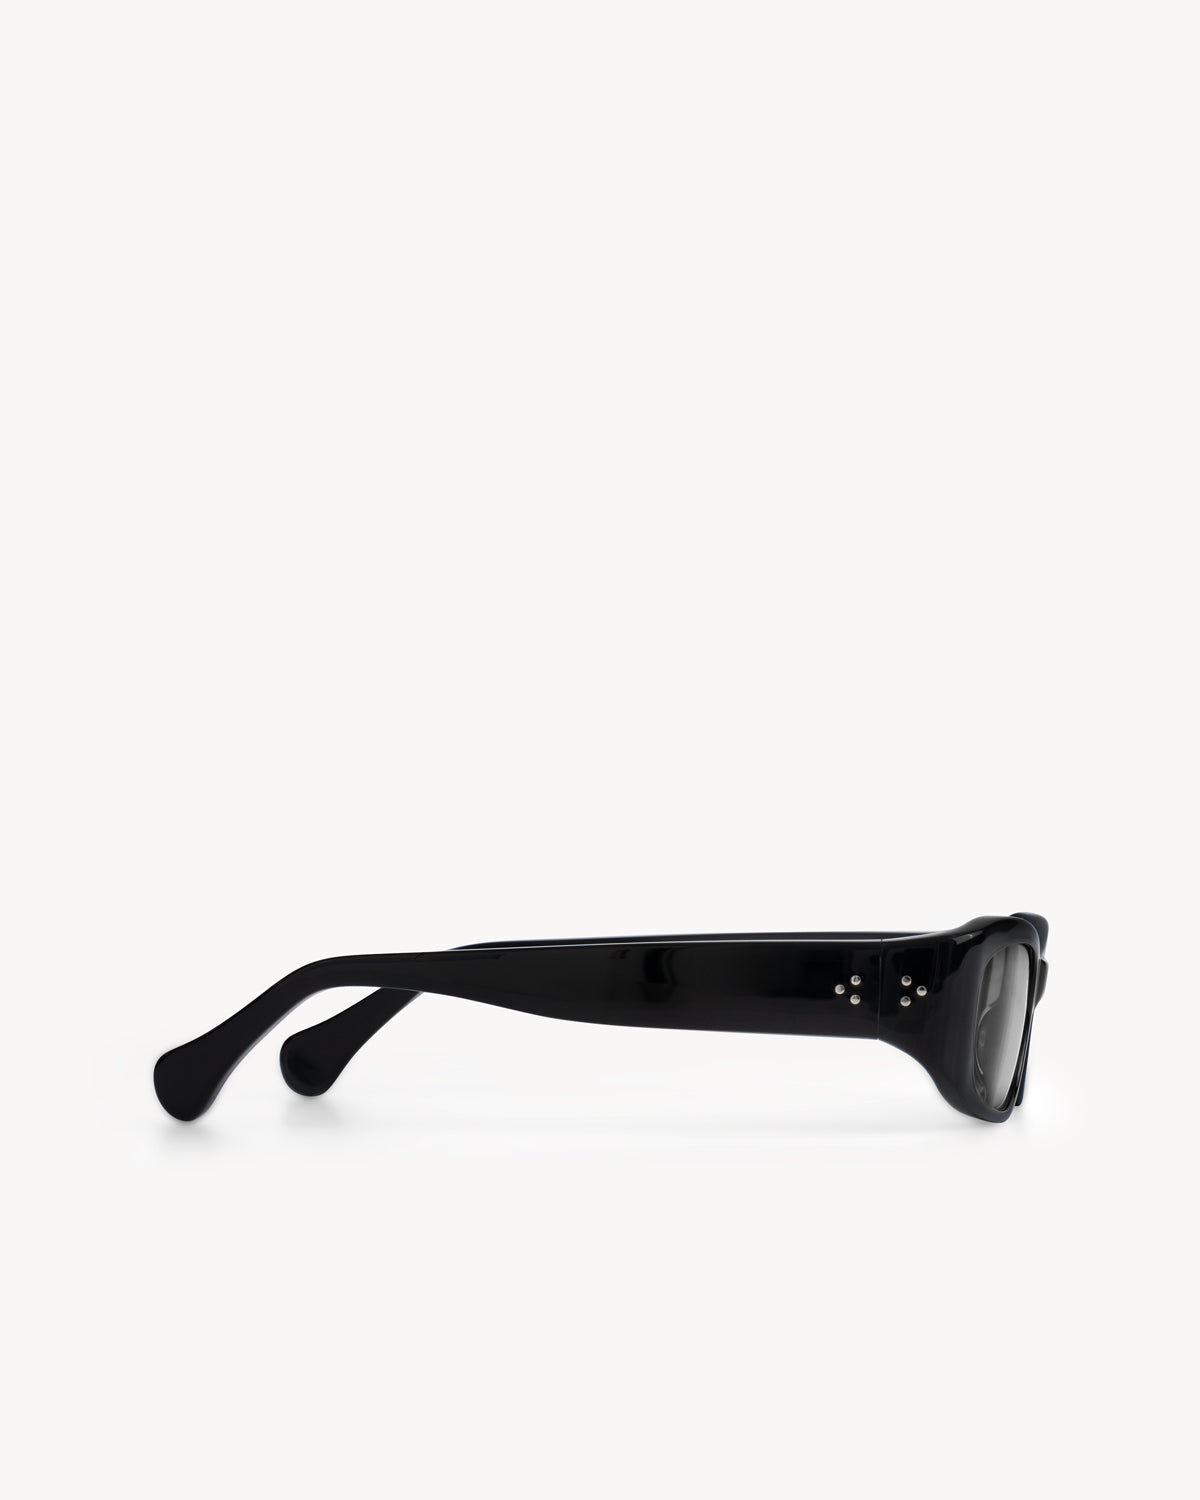 Port Tanger Leila Sunglasses in Black Acetate and Black Lenses 4